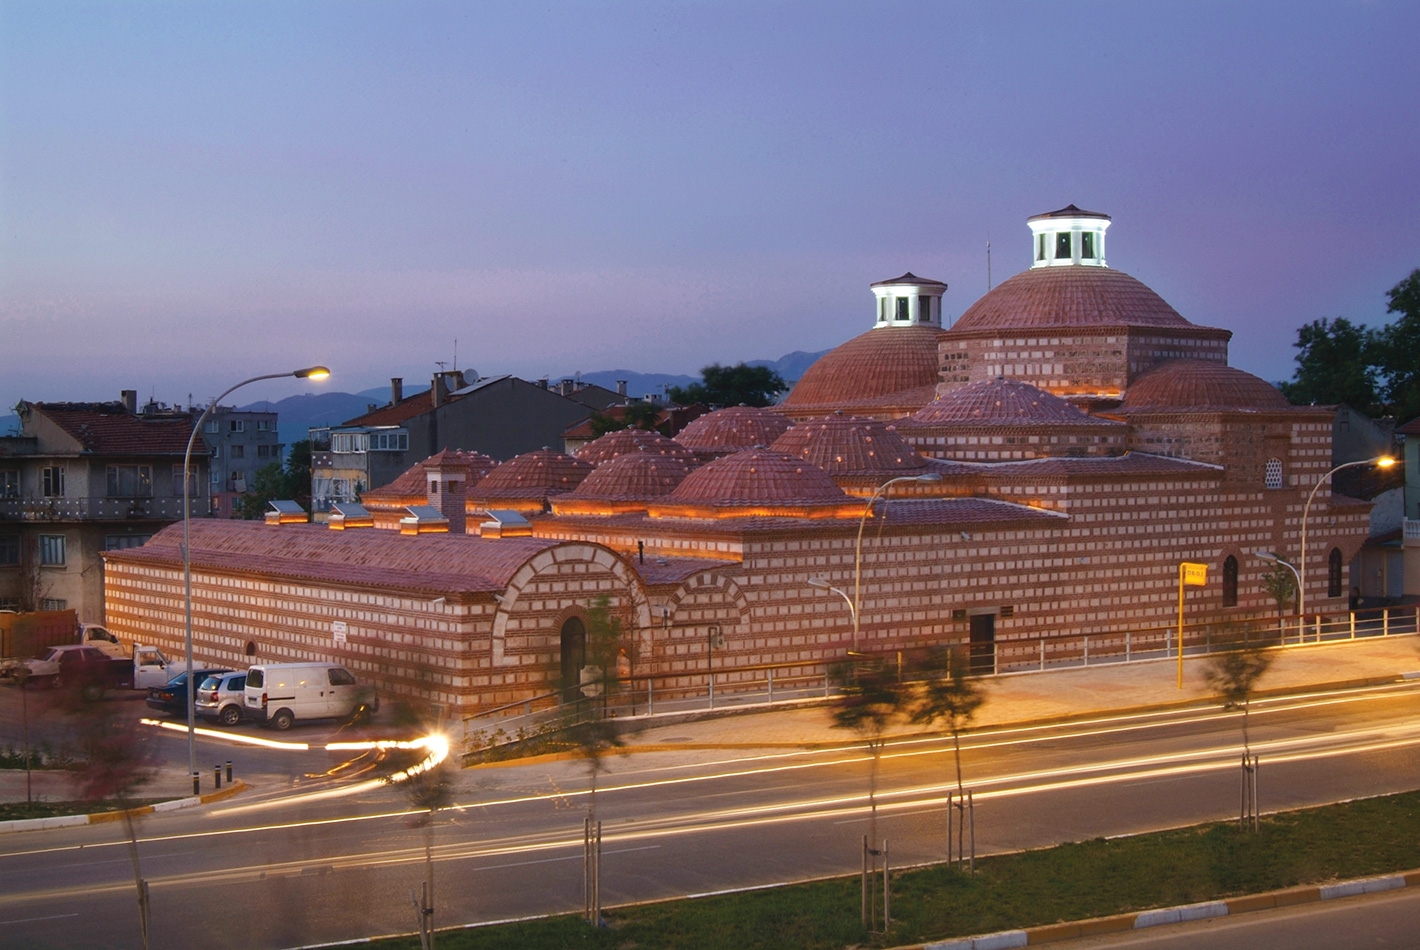 Ördekli Hamamı Kültür Merkezi